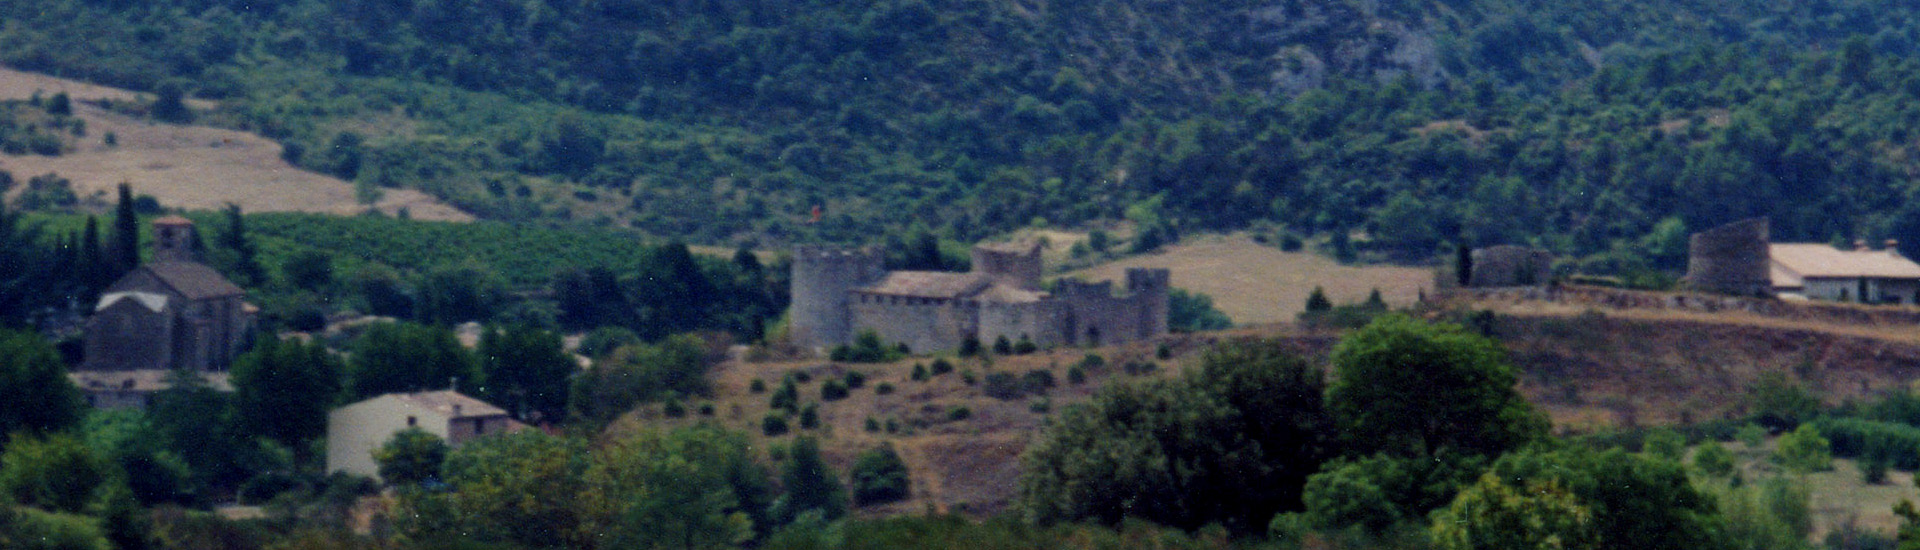 Château de Villerouge Termenes